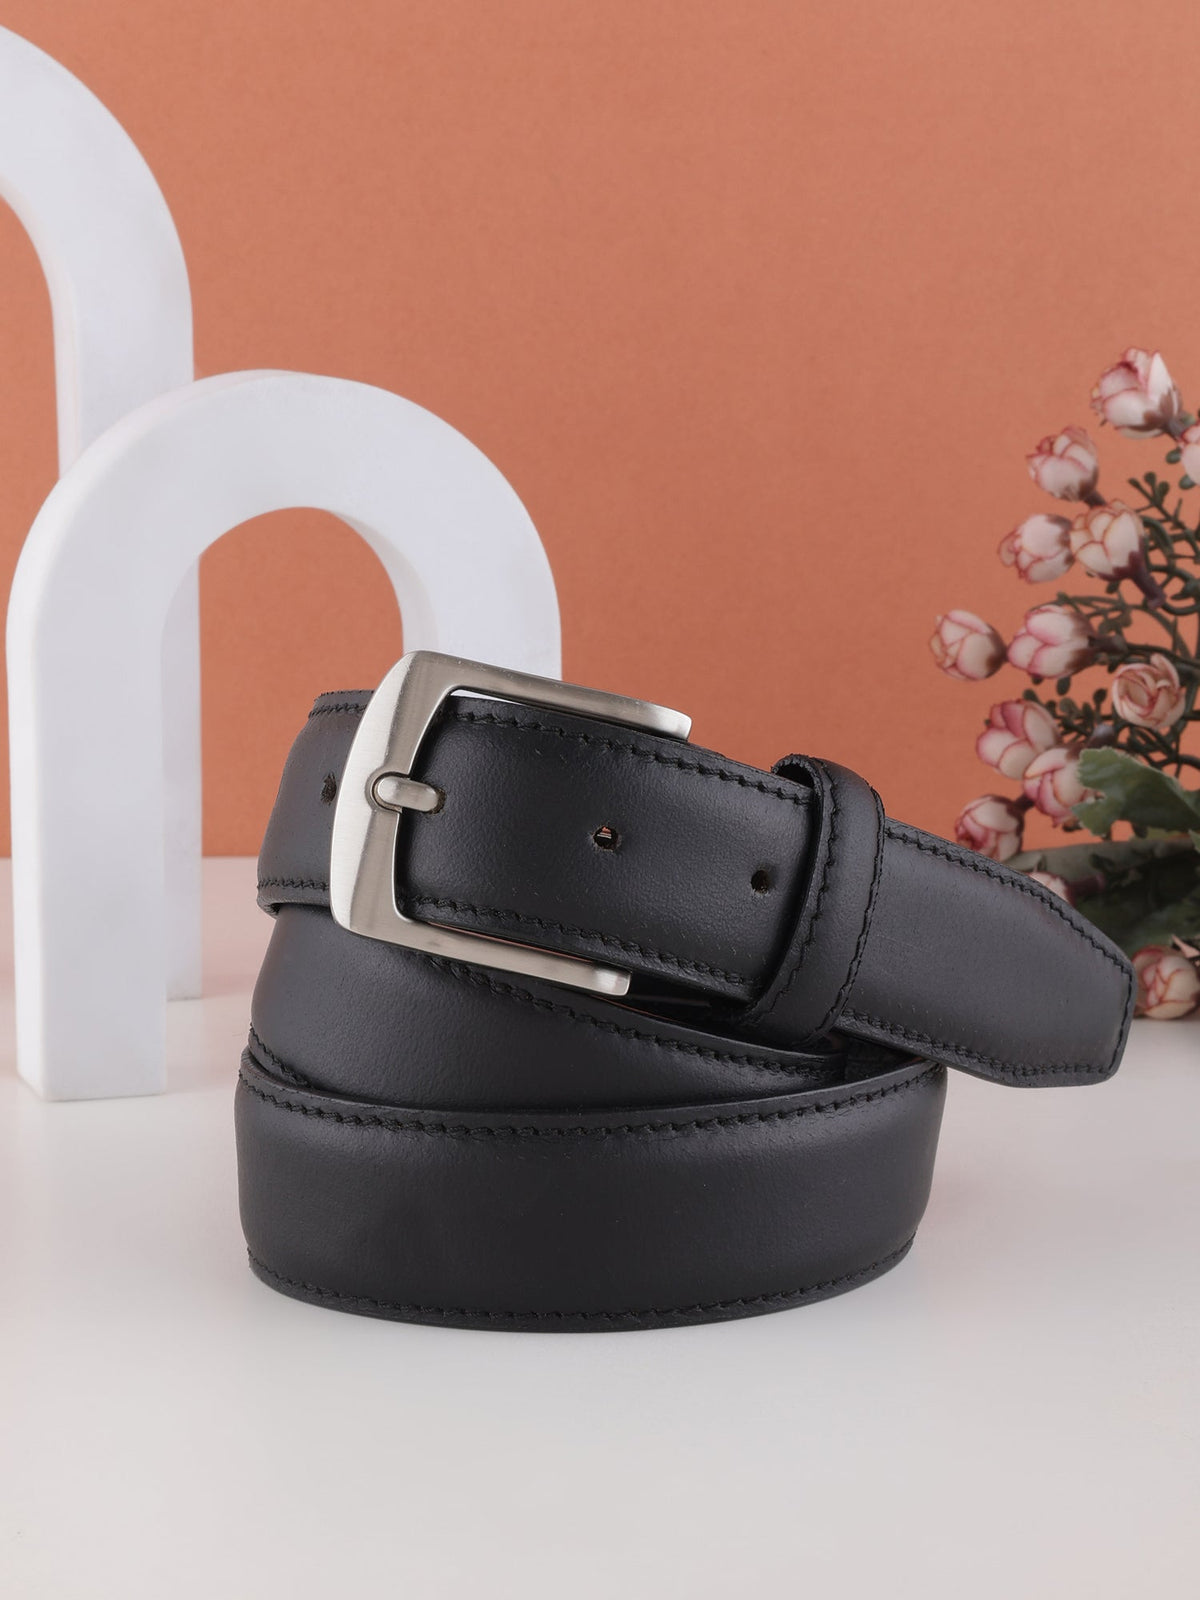 Formal Black Stitch Design Genuine Leather Men's Belt